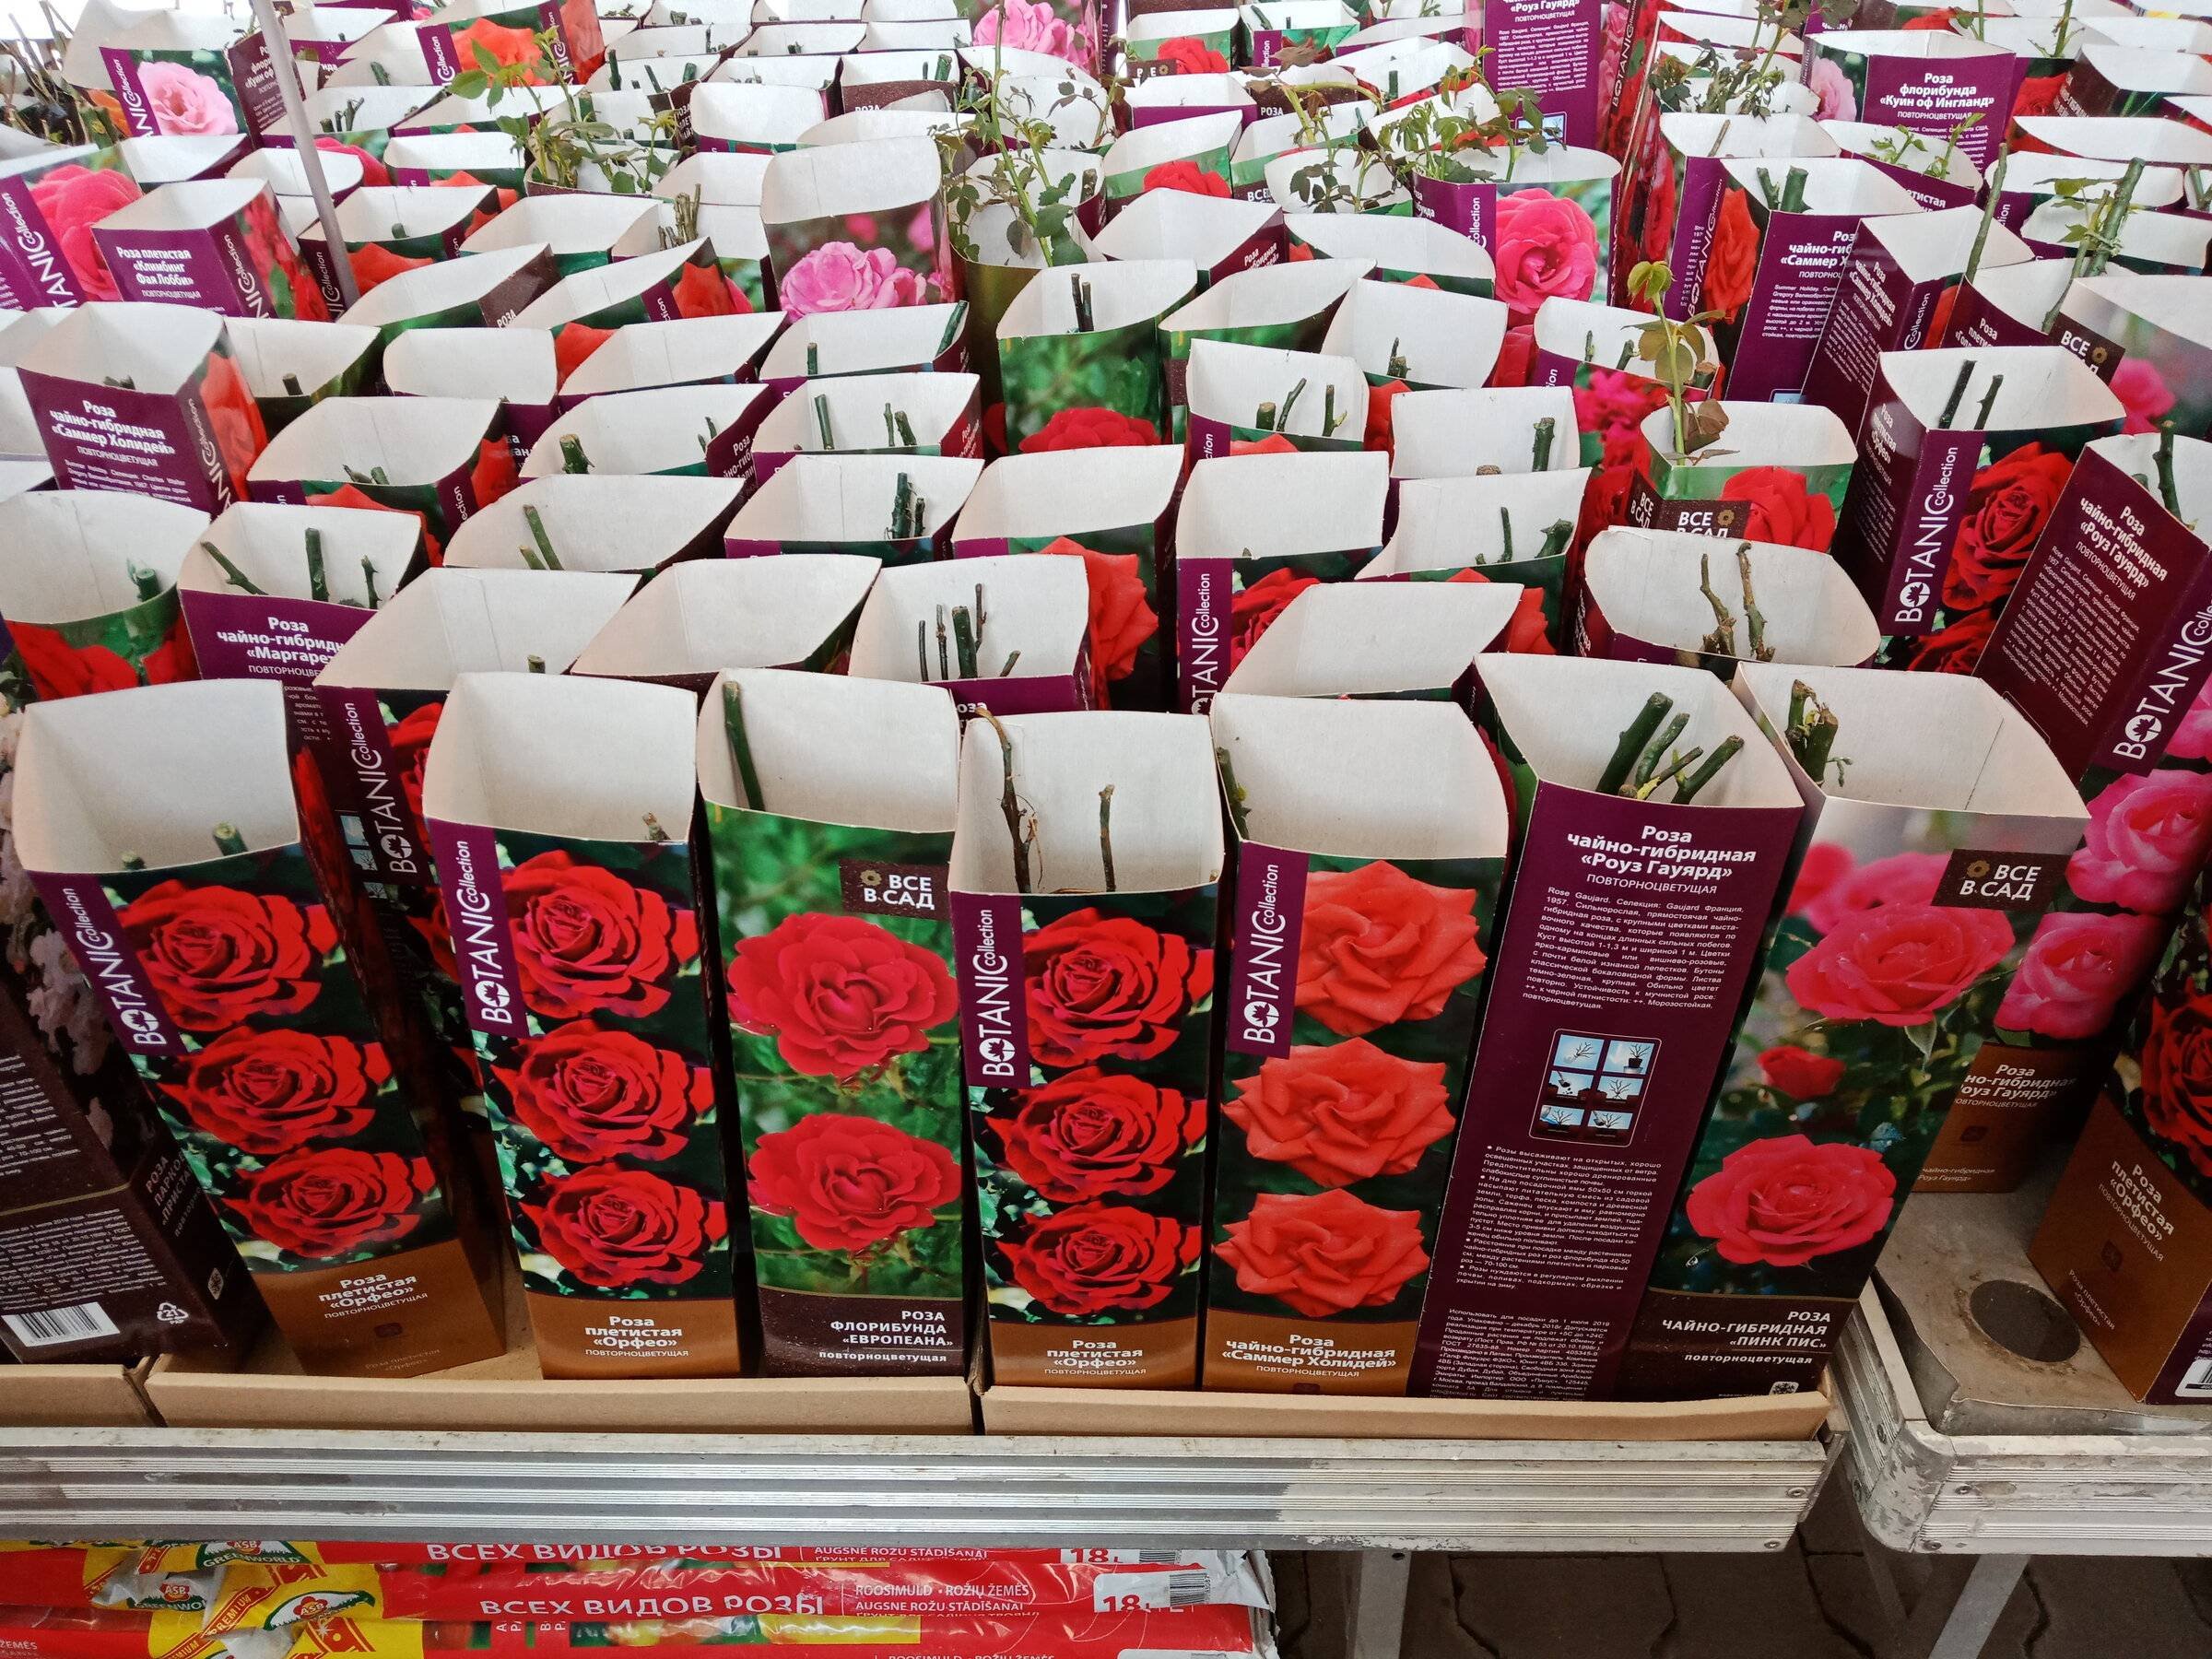 Саженцы роз в коробках. Рассада роз. Саженцы роз в Ашане. Сажгняы роз в коробочках в магазине.